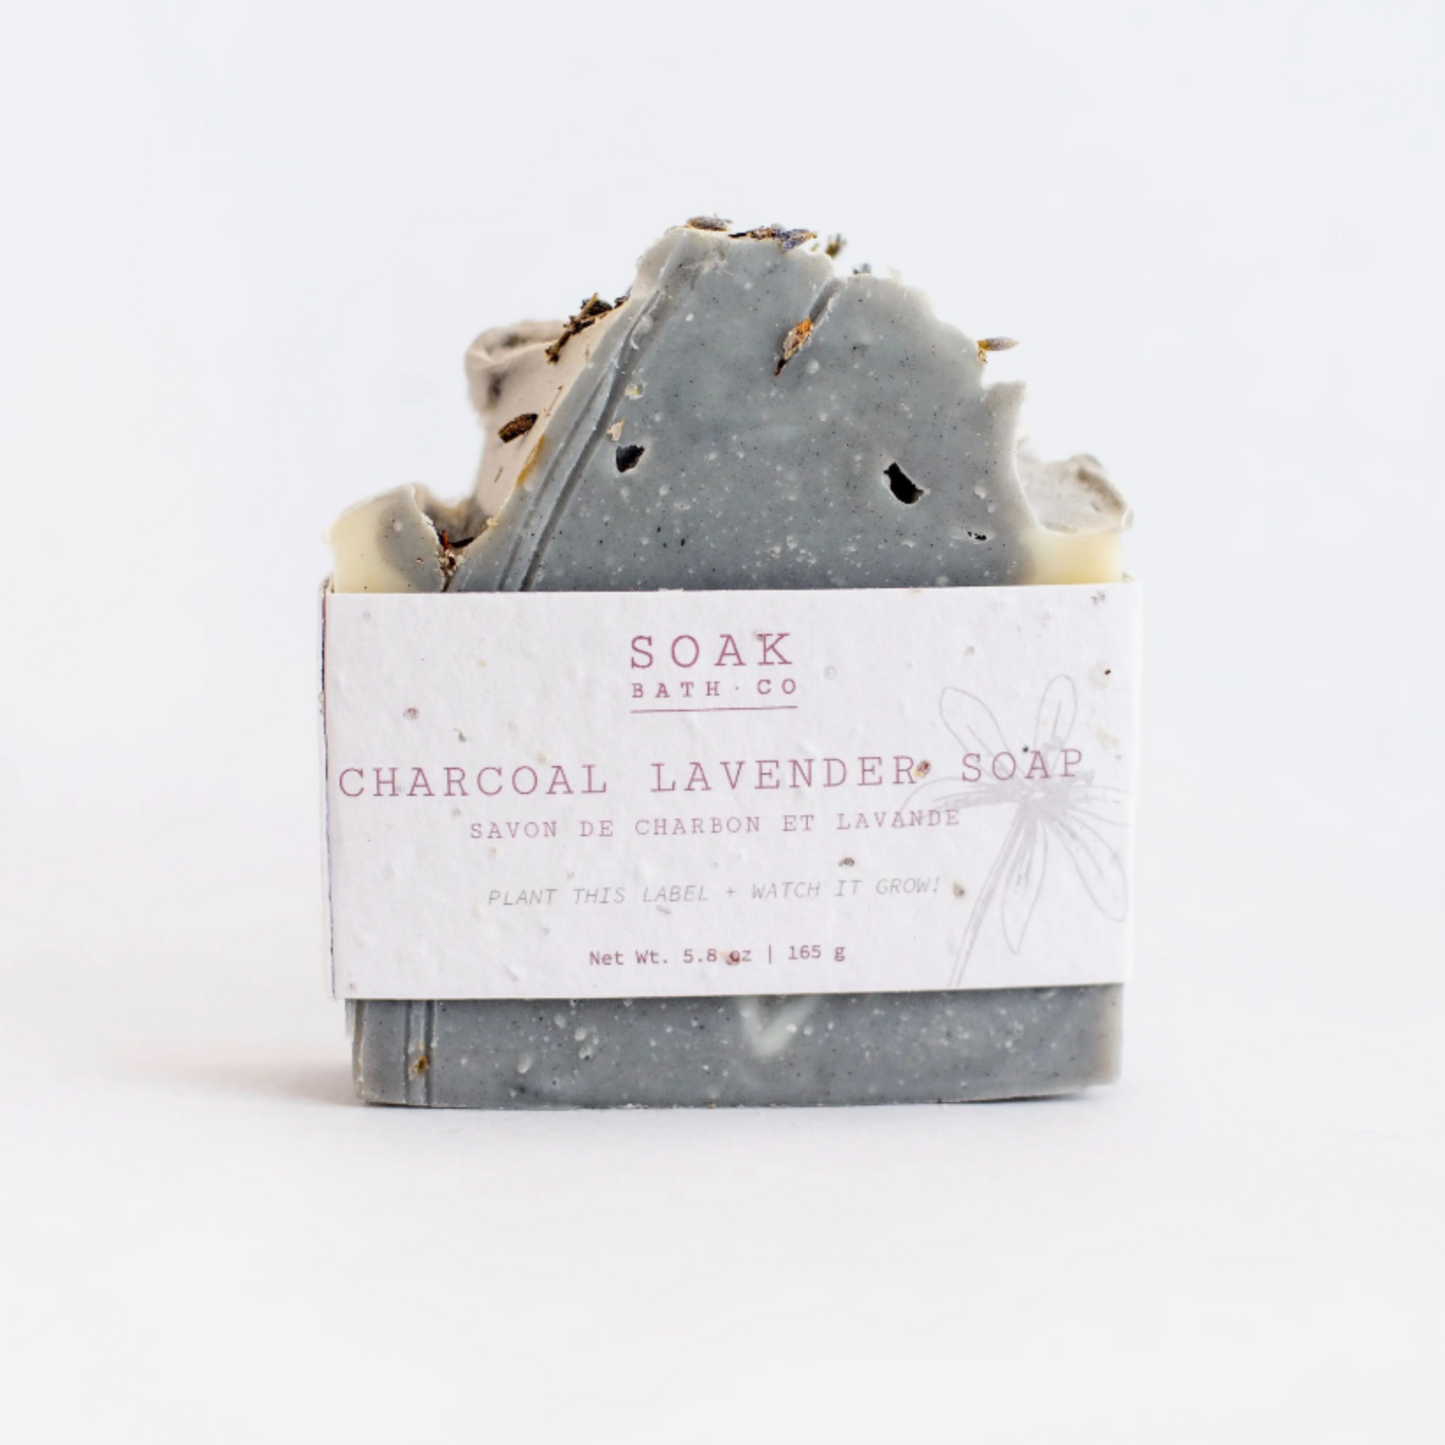 Charcoal Lavender Soap - Plantable Label